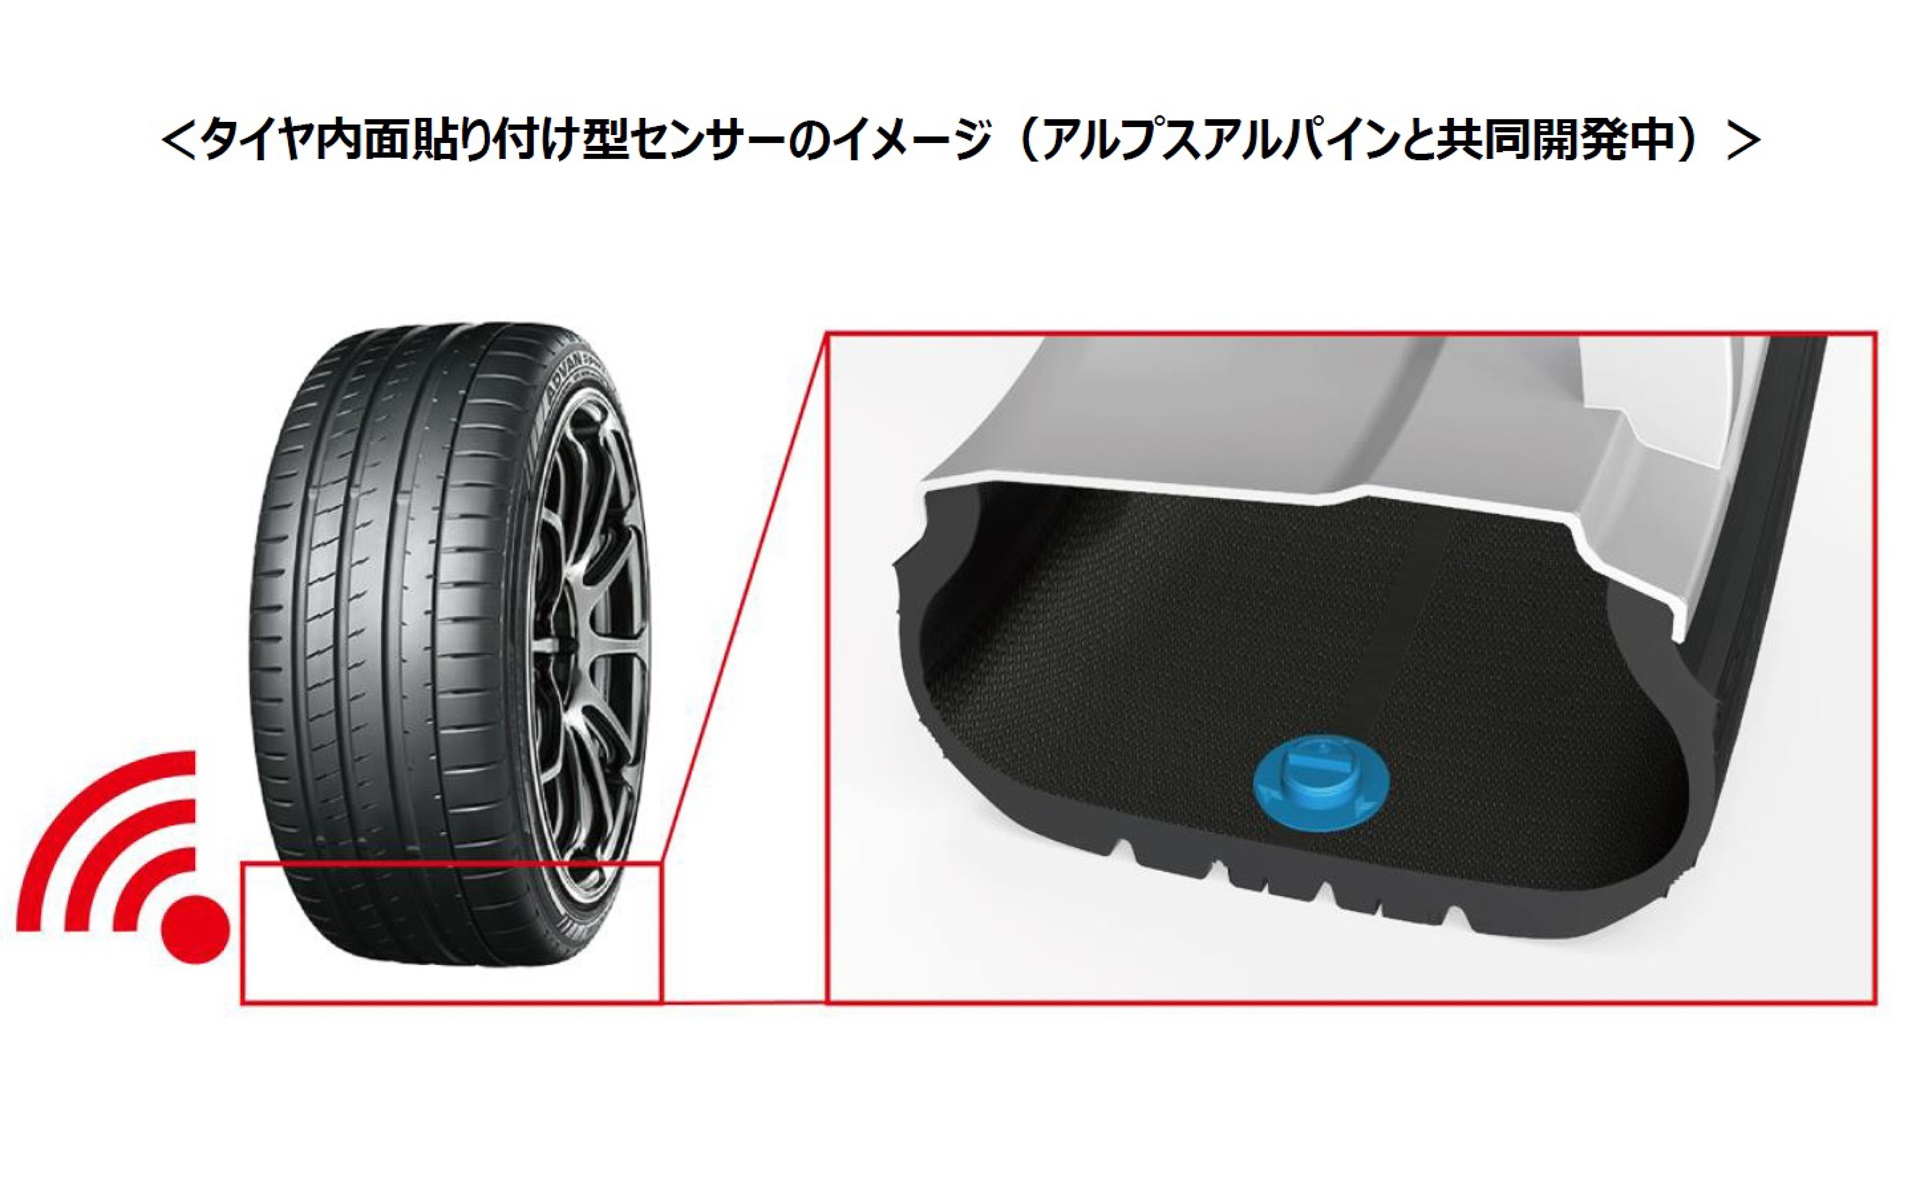 横浜ゴム、走行中のタイヤのセンシング波形から磨耗状況を検知する技術 